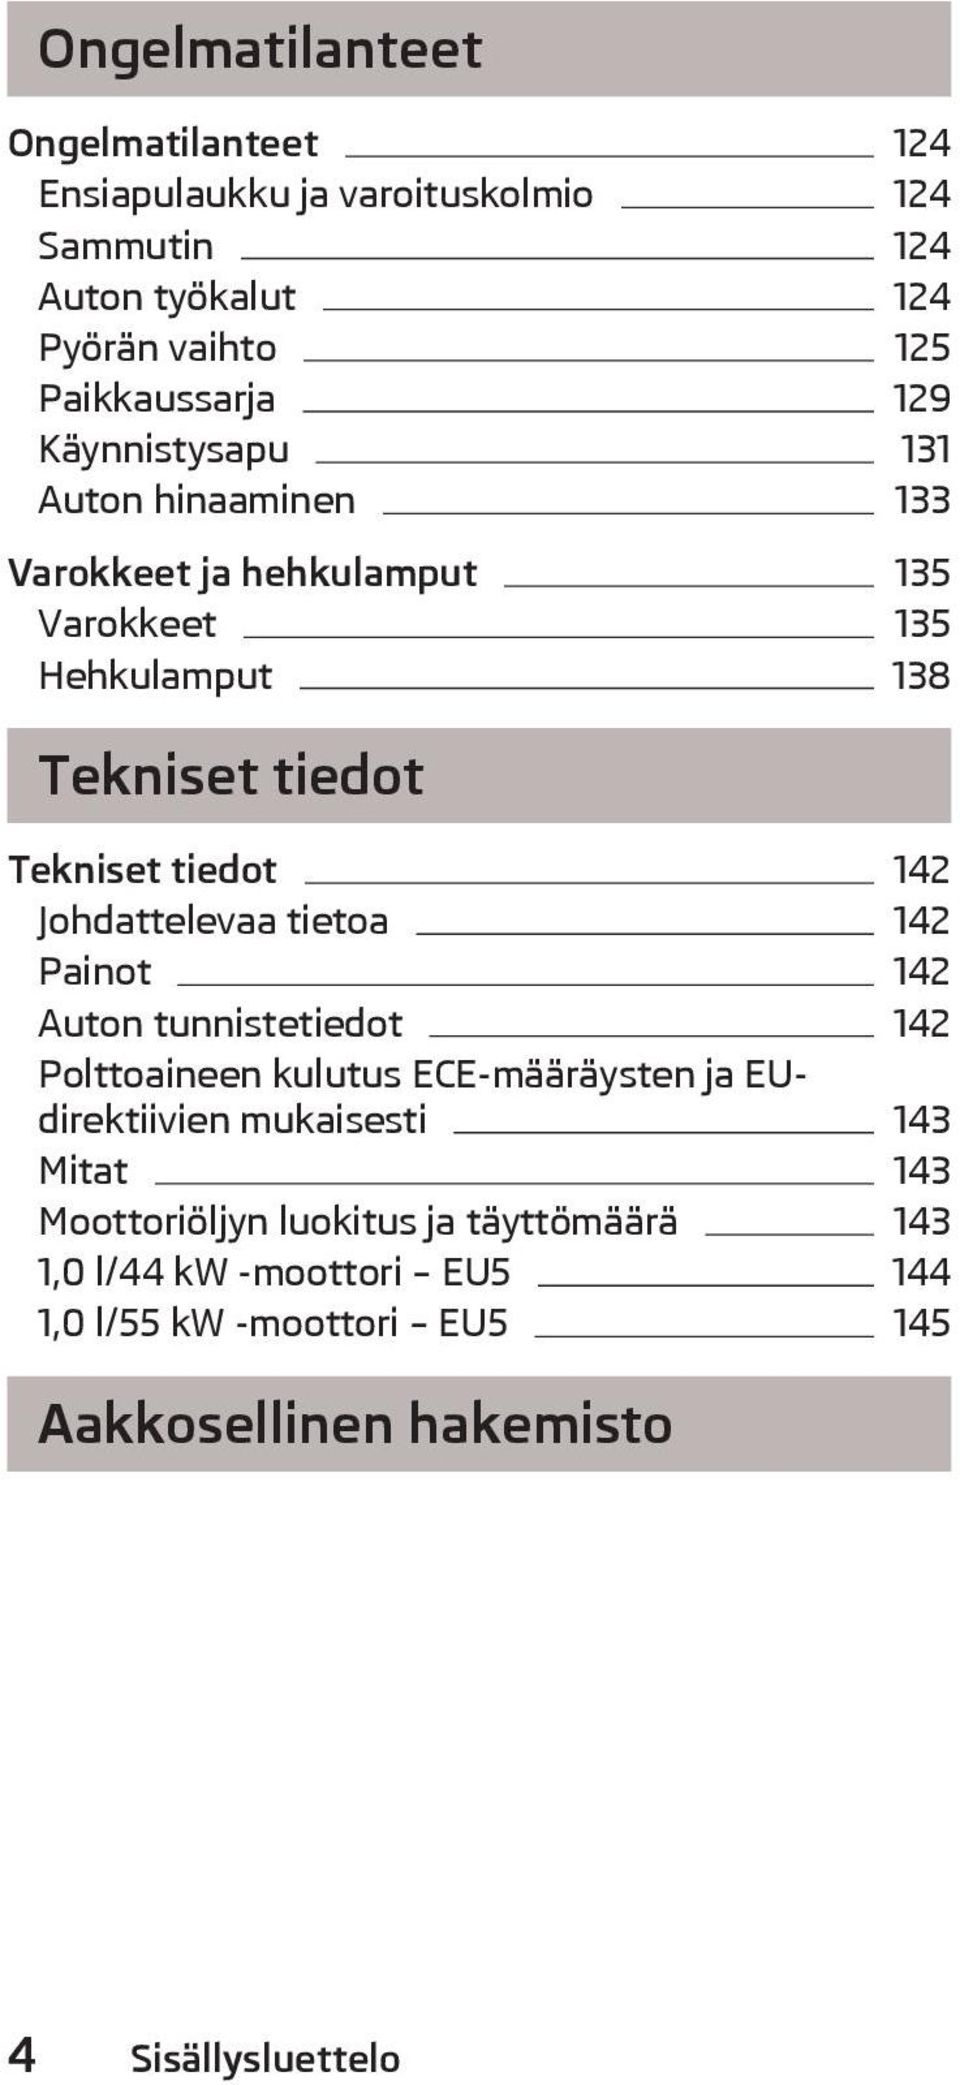 Johdattelevaa tietoa 142 Painot 142 Auton tunnistetiedot 142 Polttoaineen kulutus ECE-mrysten ja EUdirektiivien mukaisesti 143 Mitat 143